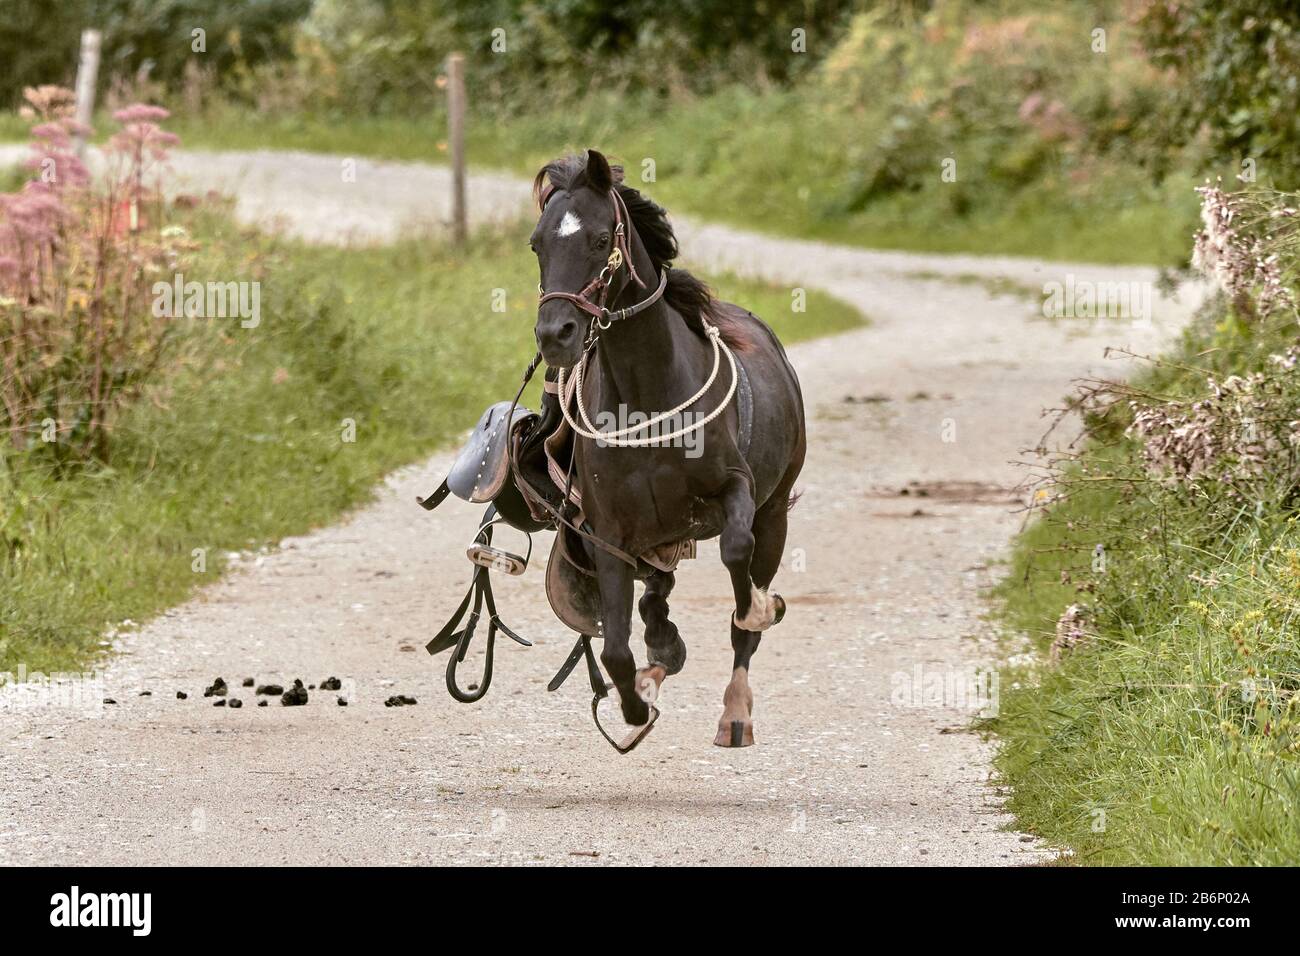 Un cheval s'est échappé vers la caméra sur une route de terre Banque D'Images